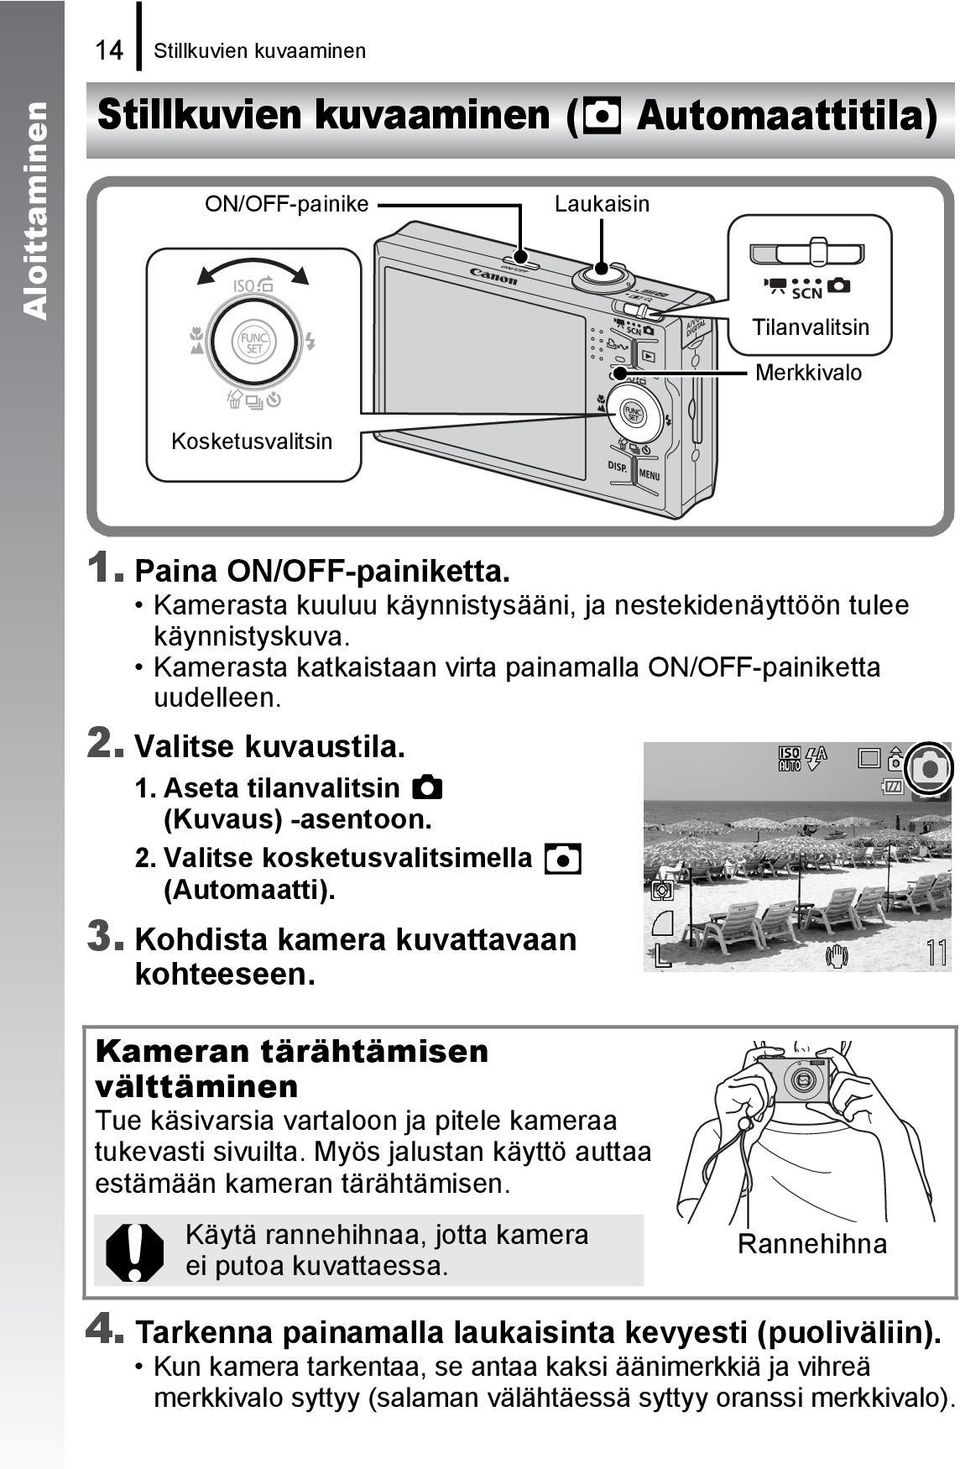 Aseta tilanvalitsin (Kuvaus) -asentoon. 2. Valitse kosketusvalitsimella (Automaatti). 3. Kohdista kamera kuvattavaan kohteeseen.